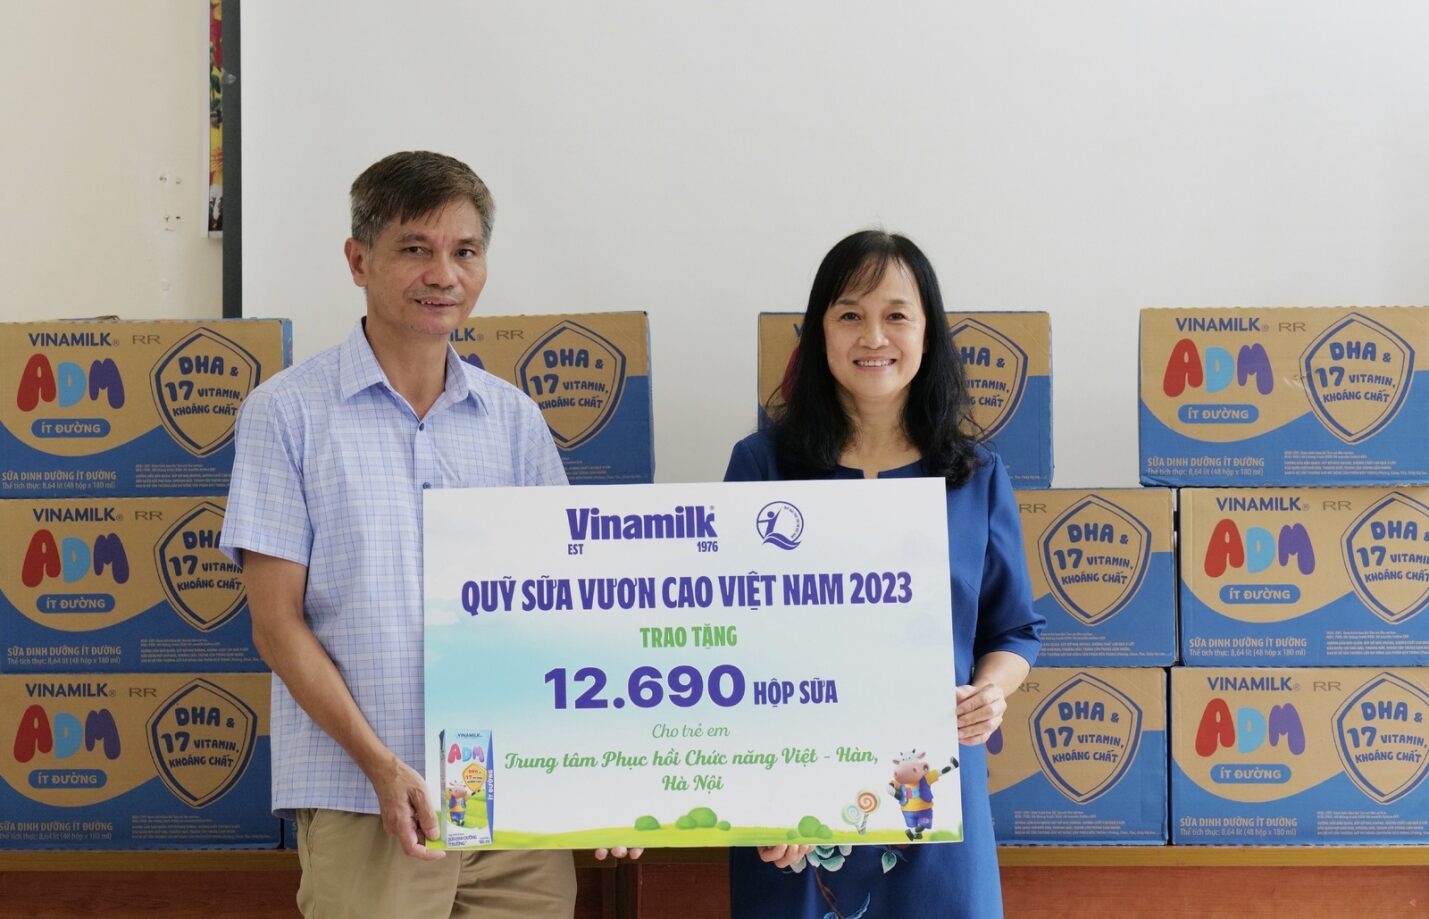 Quỹ Sữa Vươn Cao Việt Nam đến với Trung Tâm Phục hồi Chức Năng Việt - Hàn